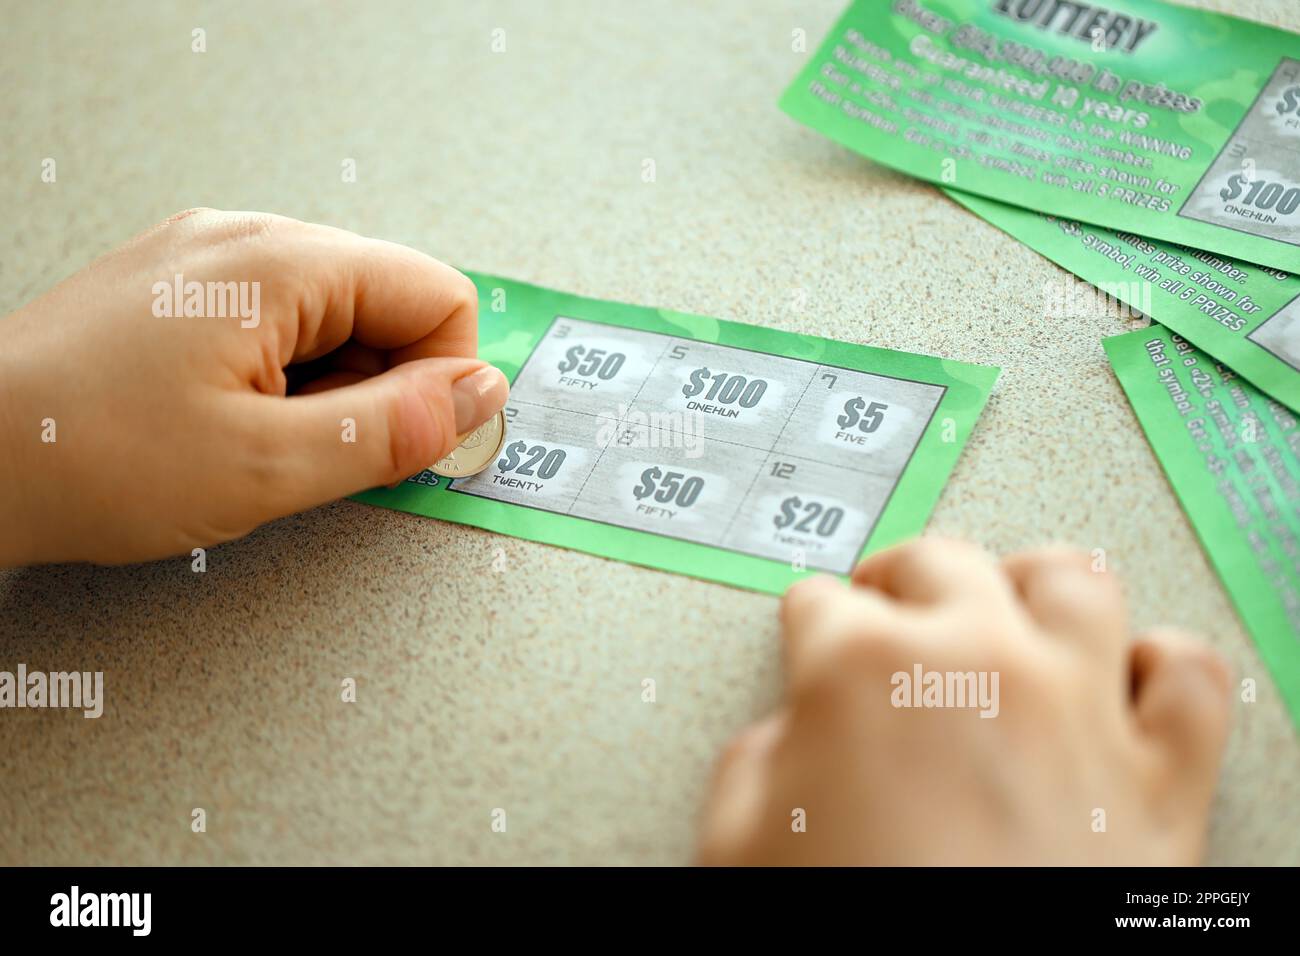 Vista ravvicinata della moneta d'argento in mano a una falsa carta della lotteria che gratta il giocatore d'azzardo. Concetto di gioco della lotteria, lotteria per graffiare le carte Foto Stock